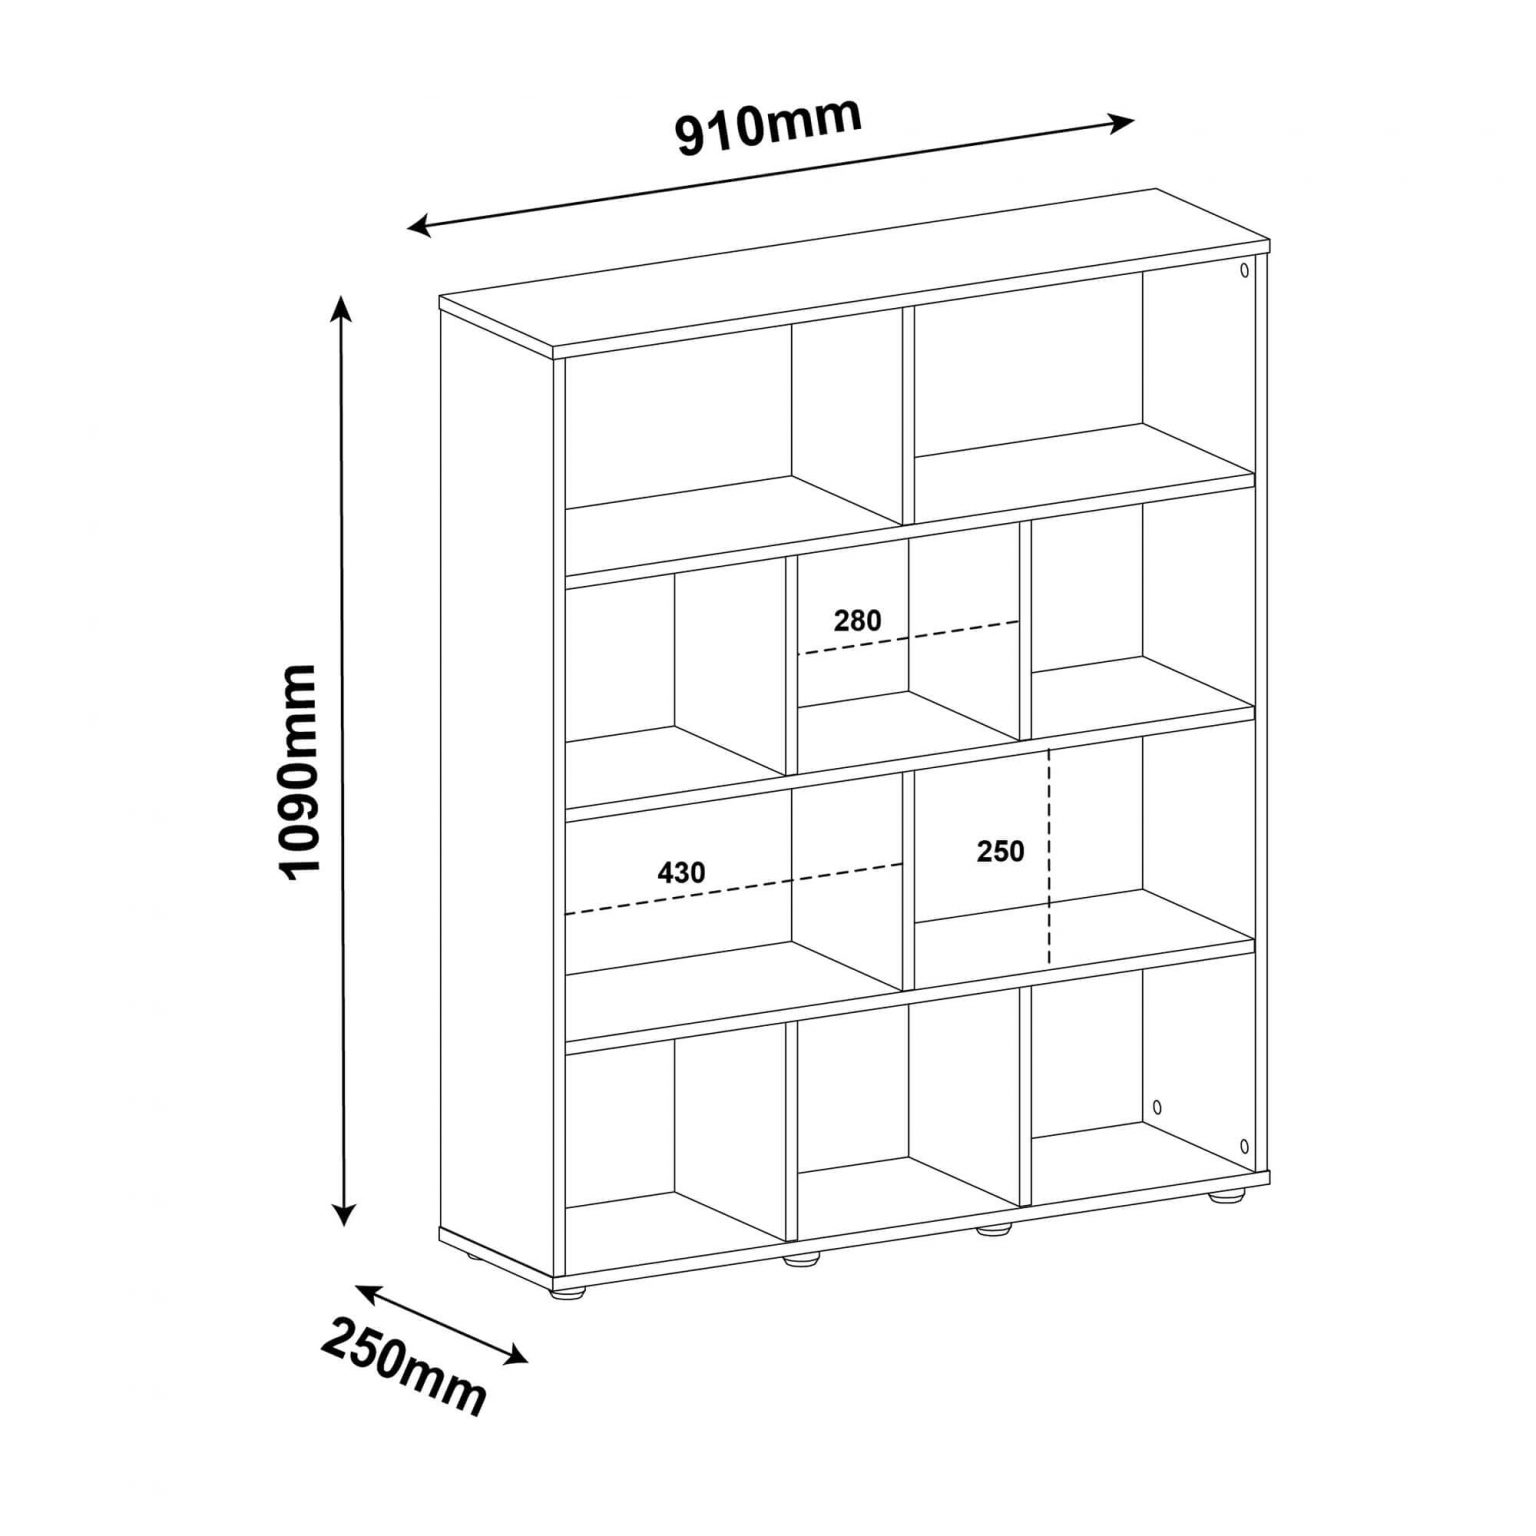 Из книжных полок составлен шкаф высота каждой полки x см найдите высоту шкафа 6